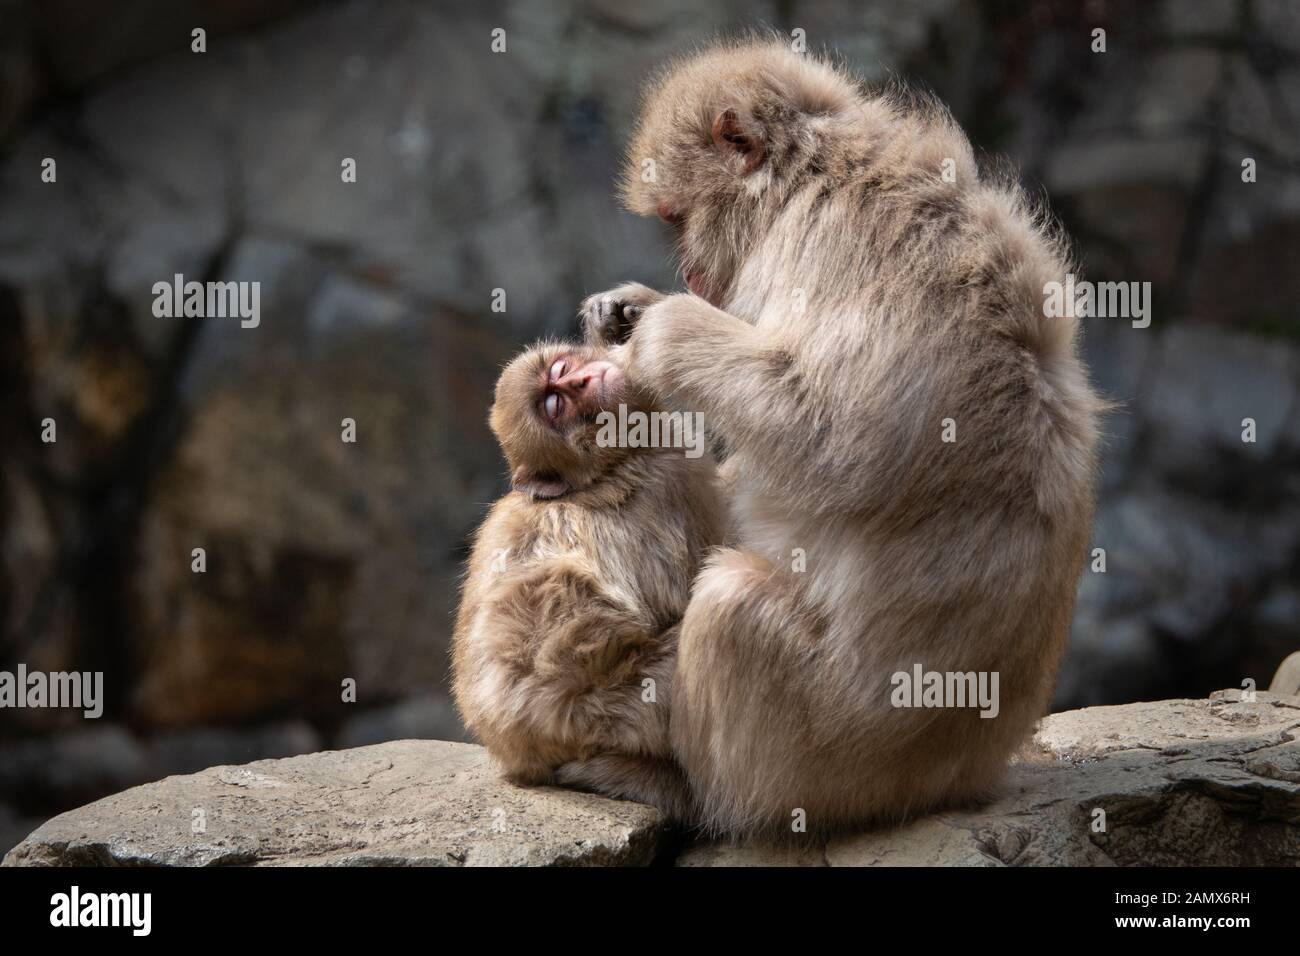 Baby snow monkey gode la toelettatura da mummia scimmia nella Jigokudani (significa "Hell's Valley") snow monkey park intorno alla molla a caldo Foto Stock